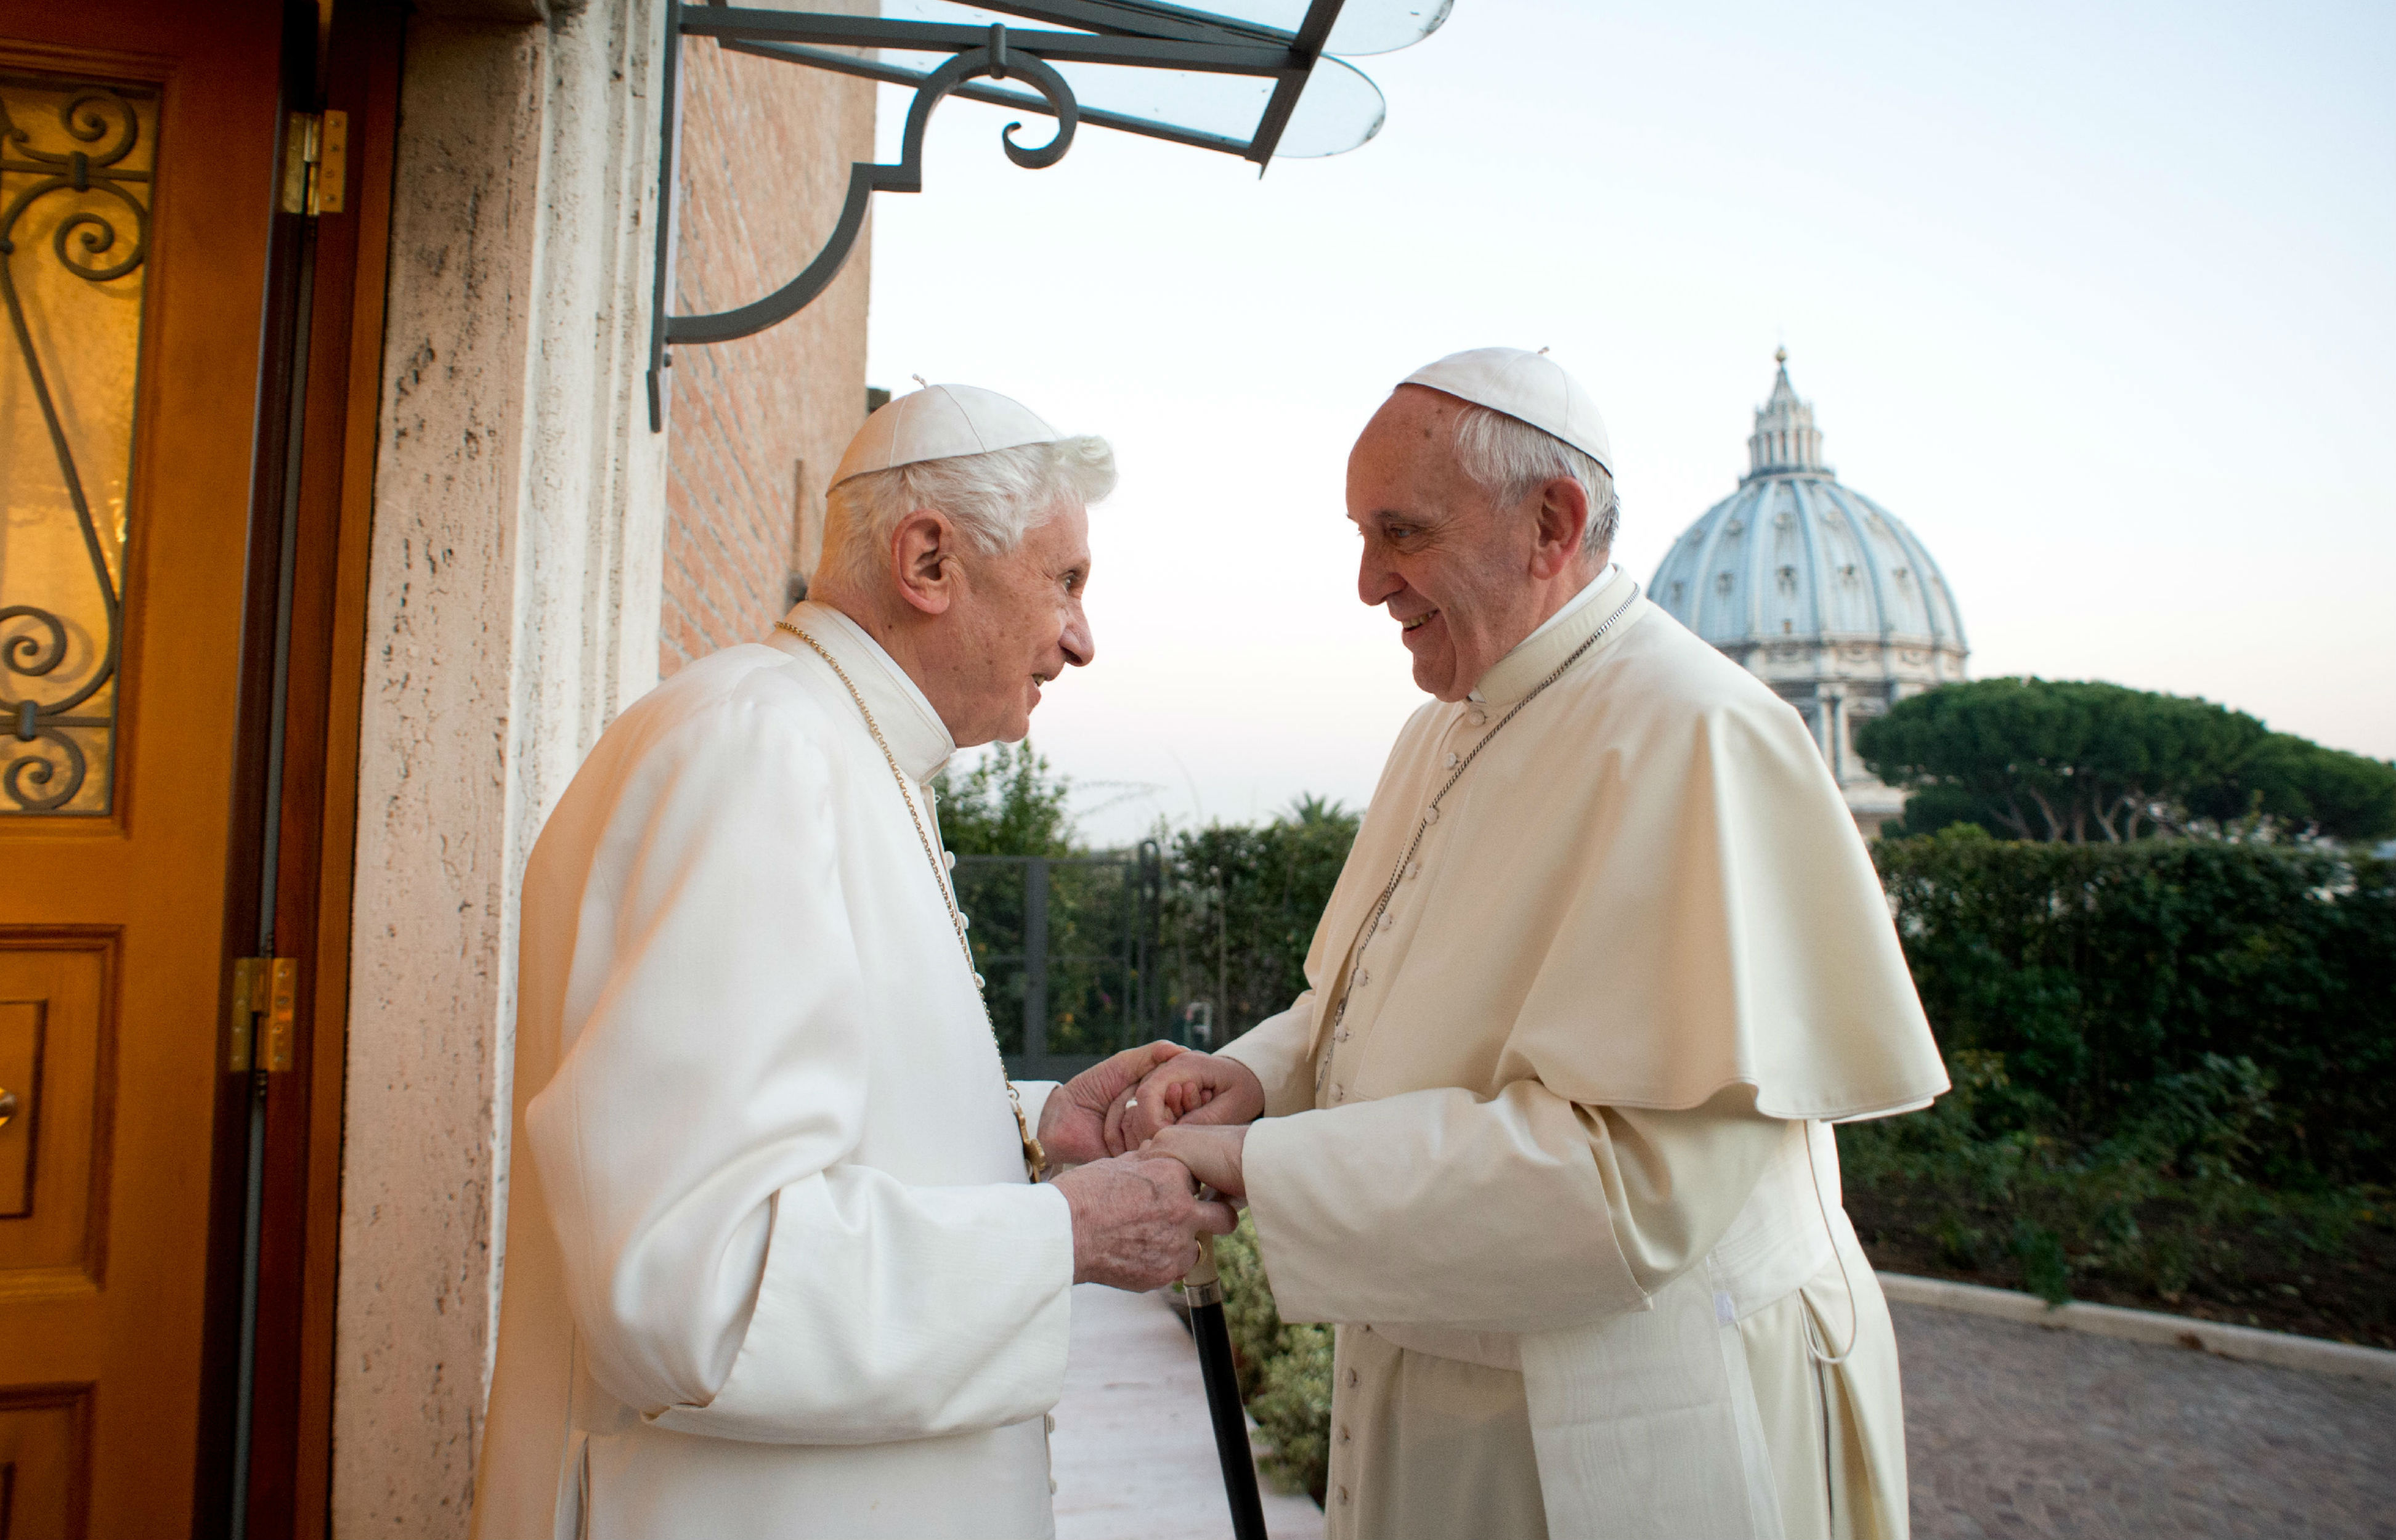 Pope Francis calls Benedict's teaching 'precious heritage'